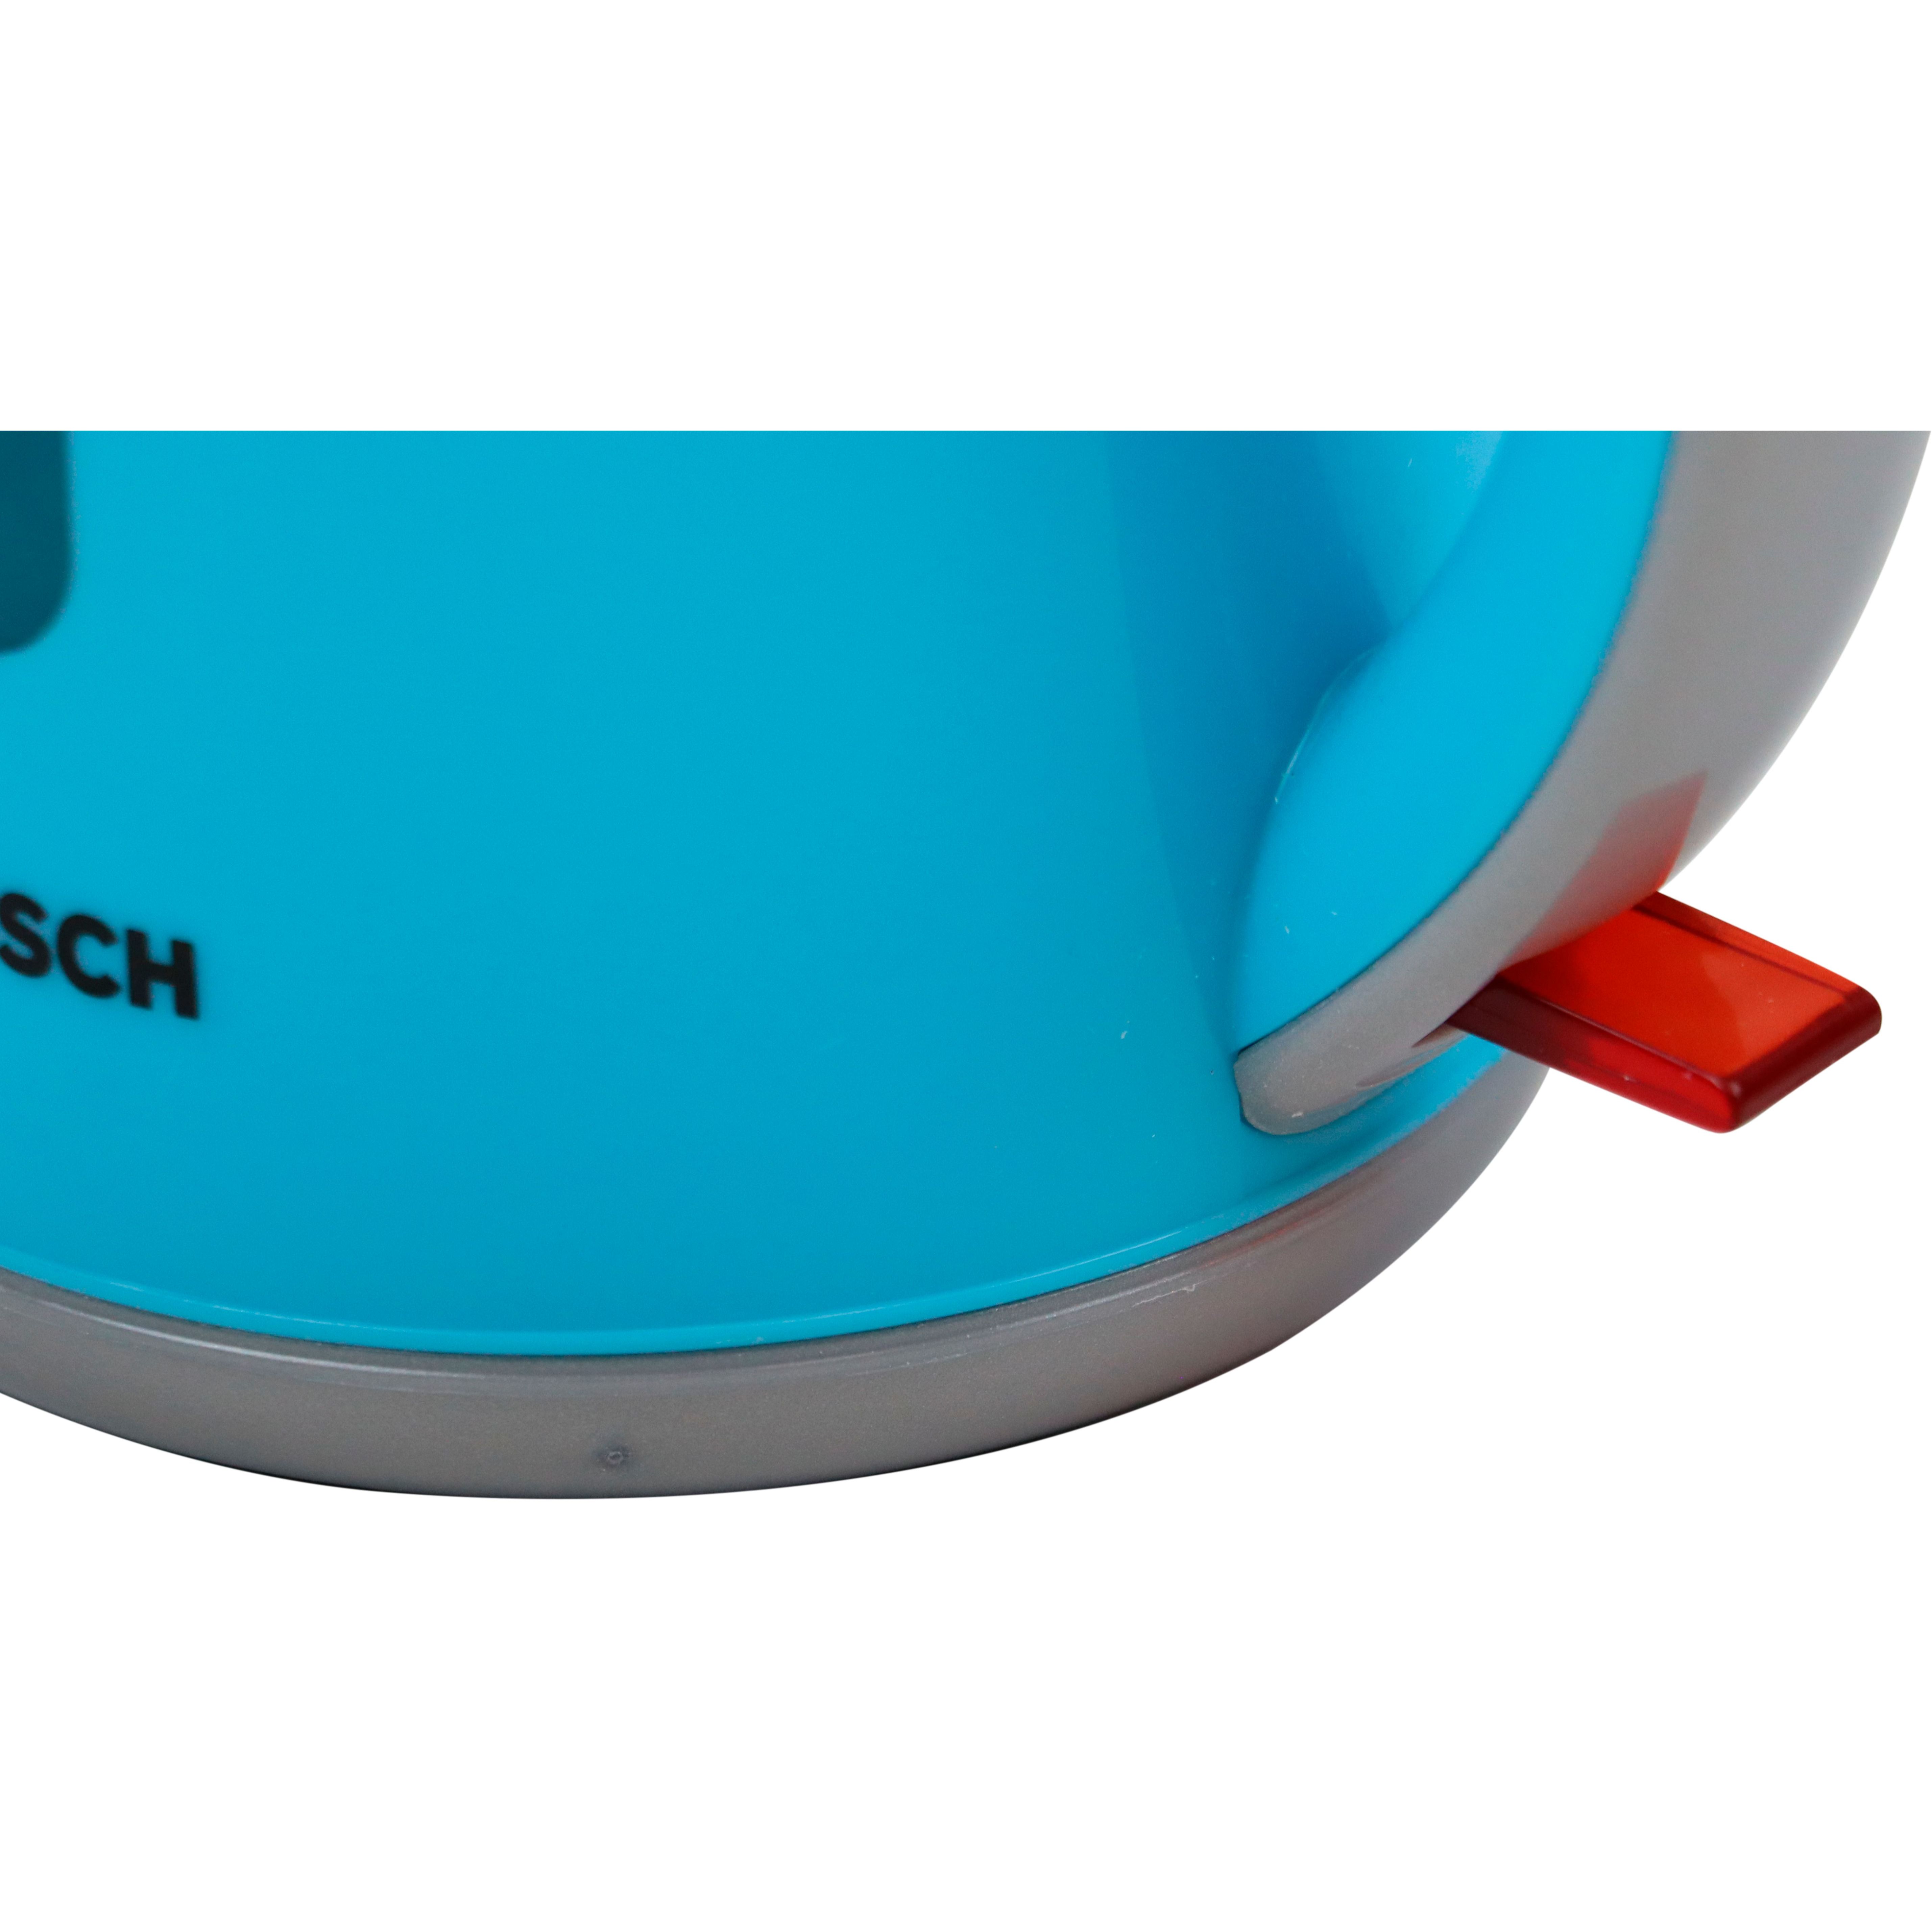 Игрушечный набор Bosch Mini чайник бирюзовый (9539) - фото 5